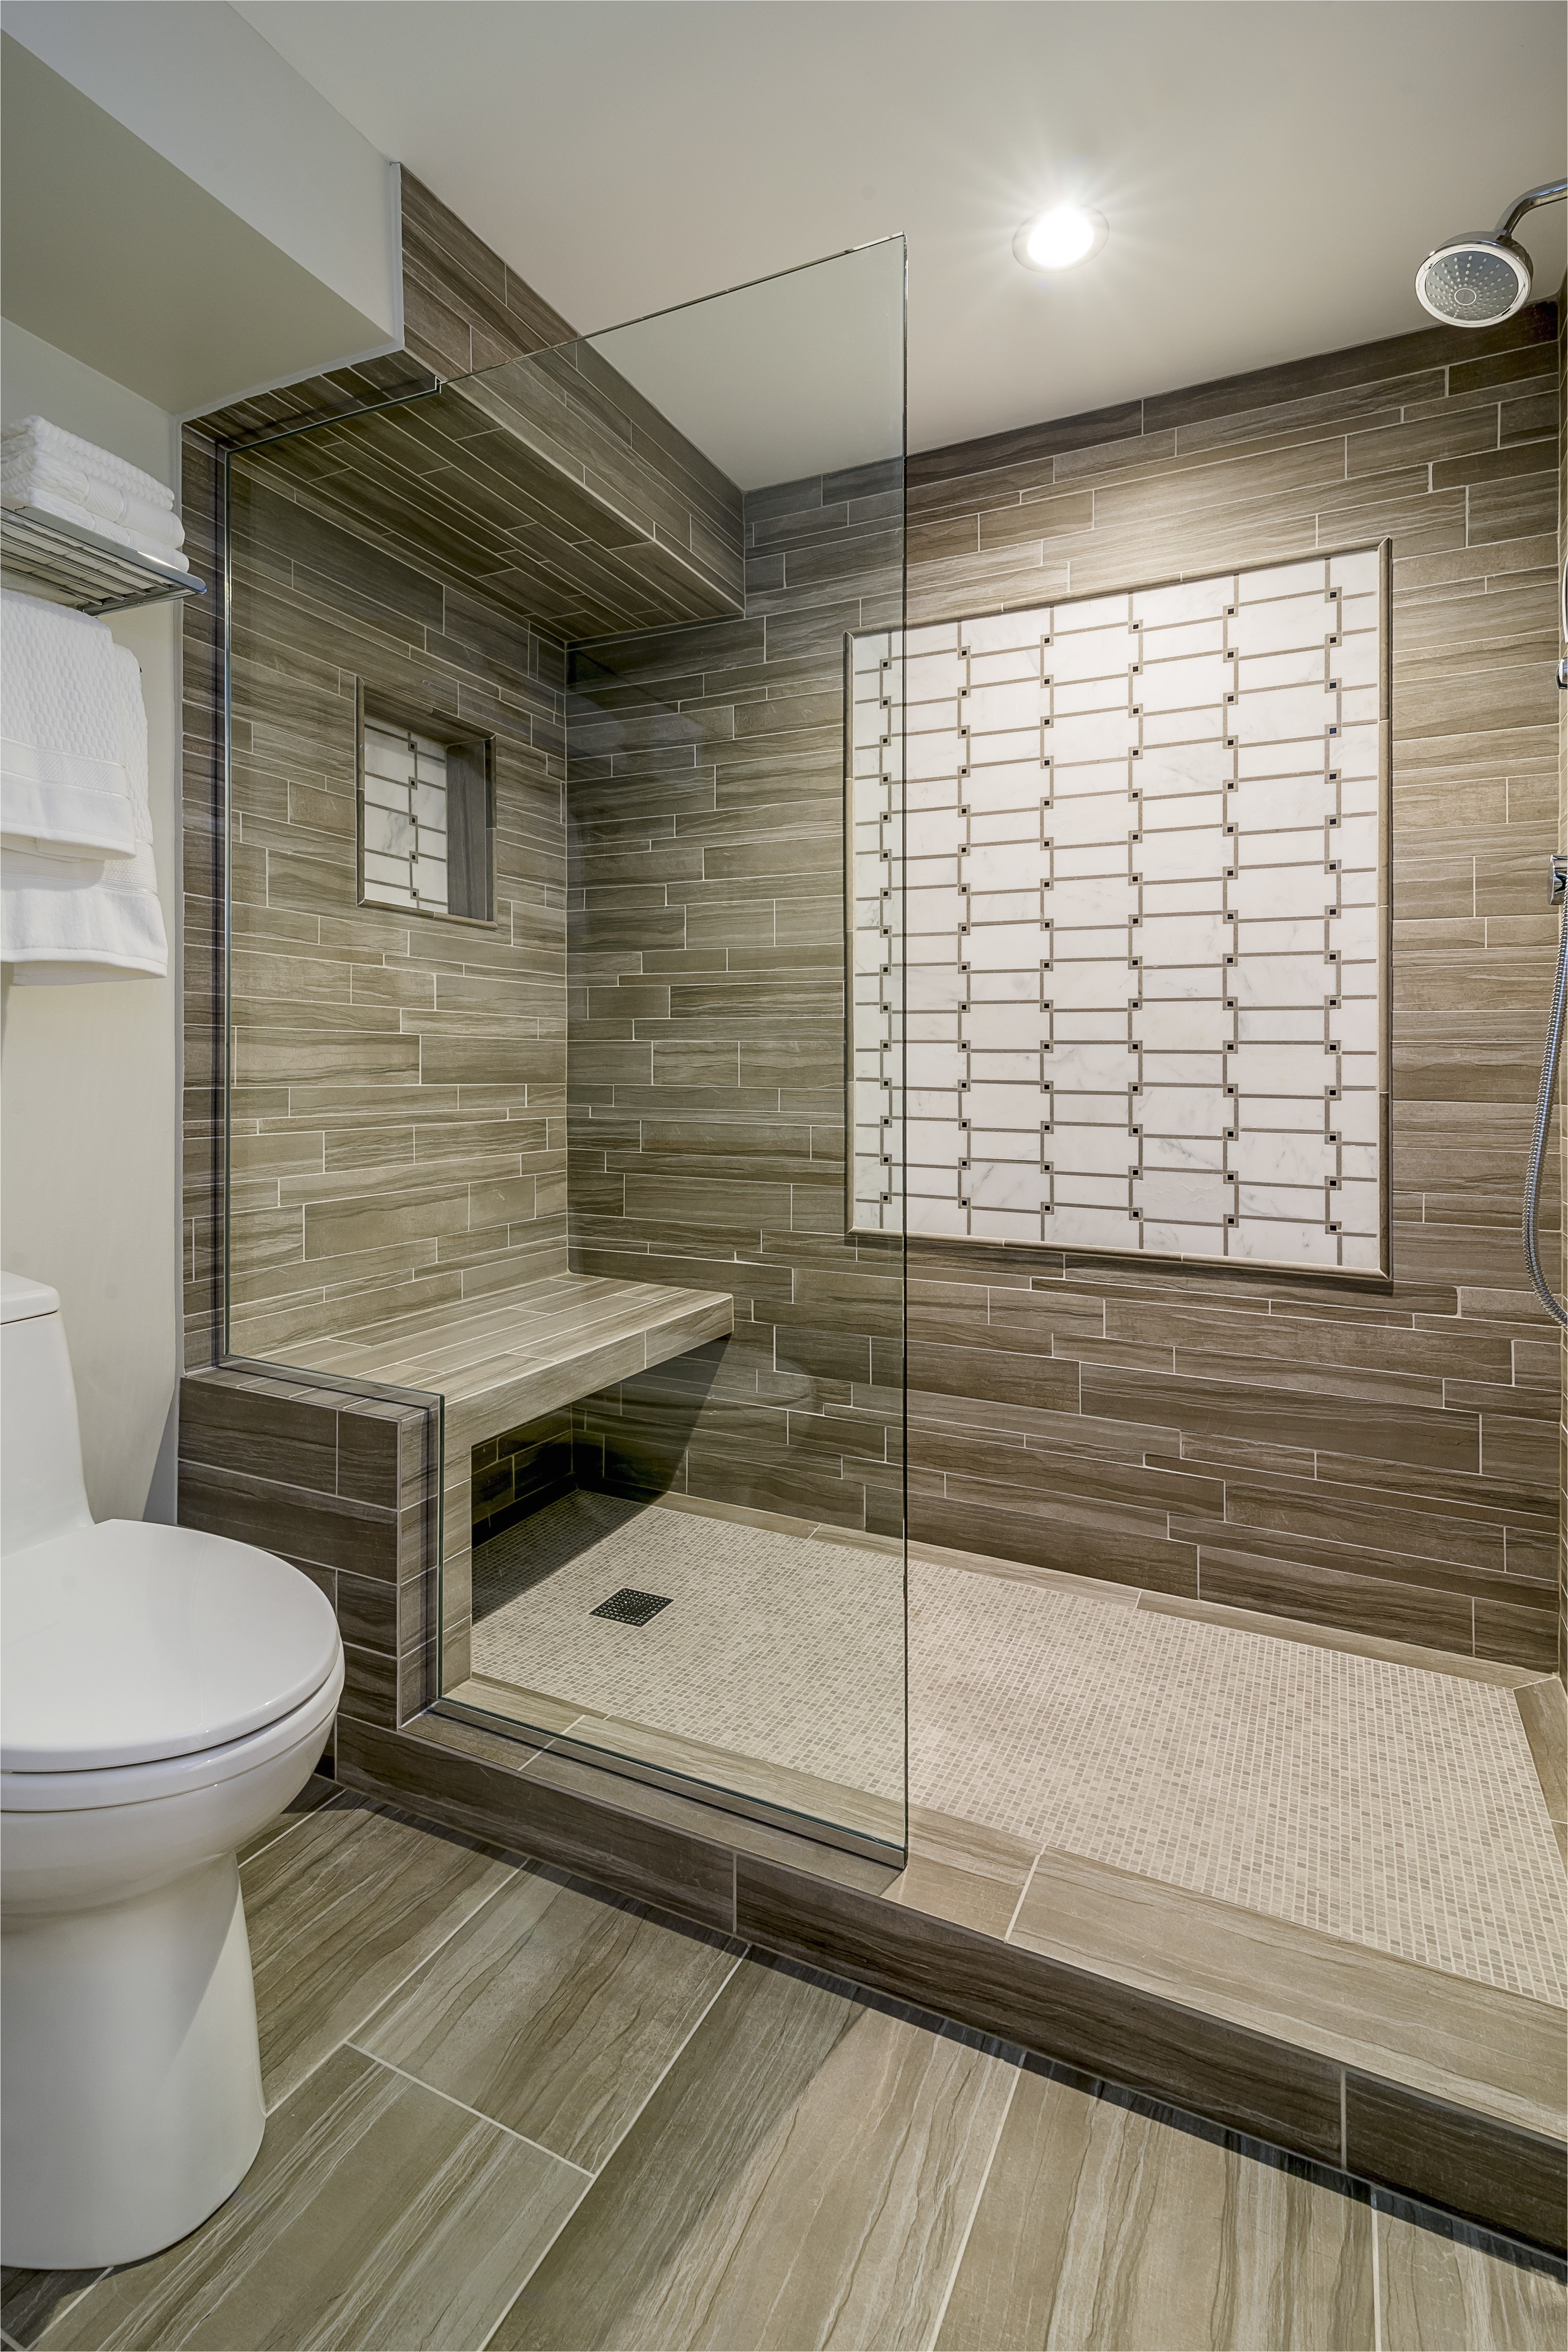 Lovely Cheap Bathroom Tile with Bathroom Floor Tile Design Ideas New Floor Tiles Mosaic Bathroom 0d